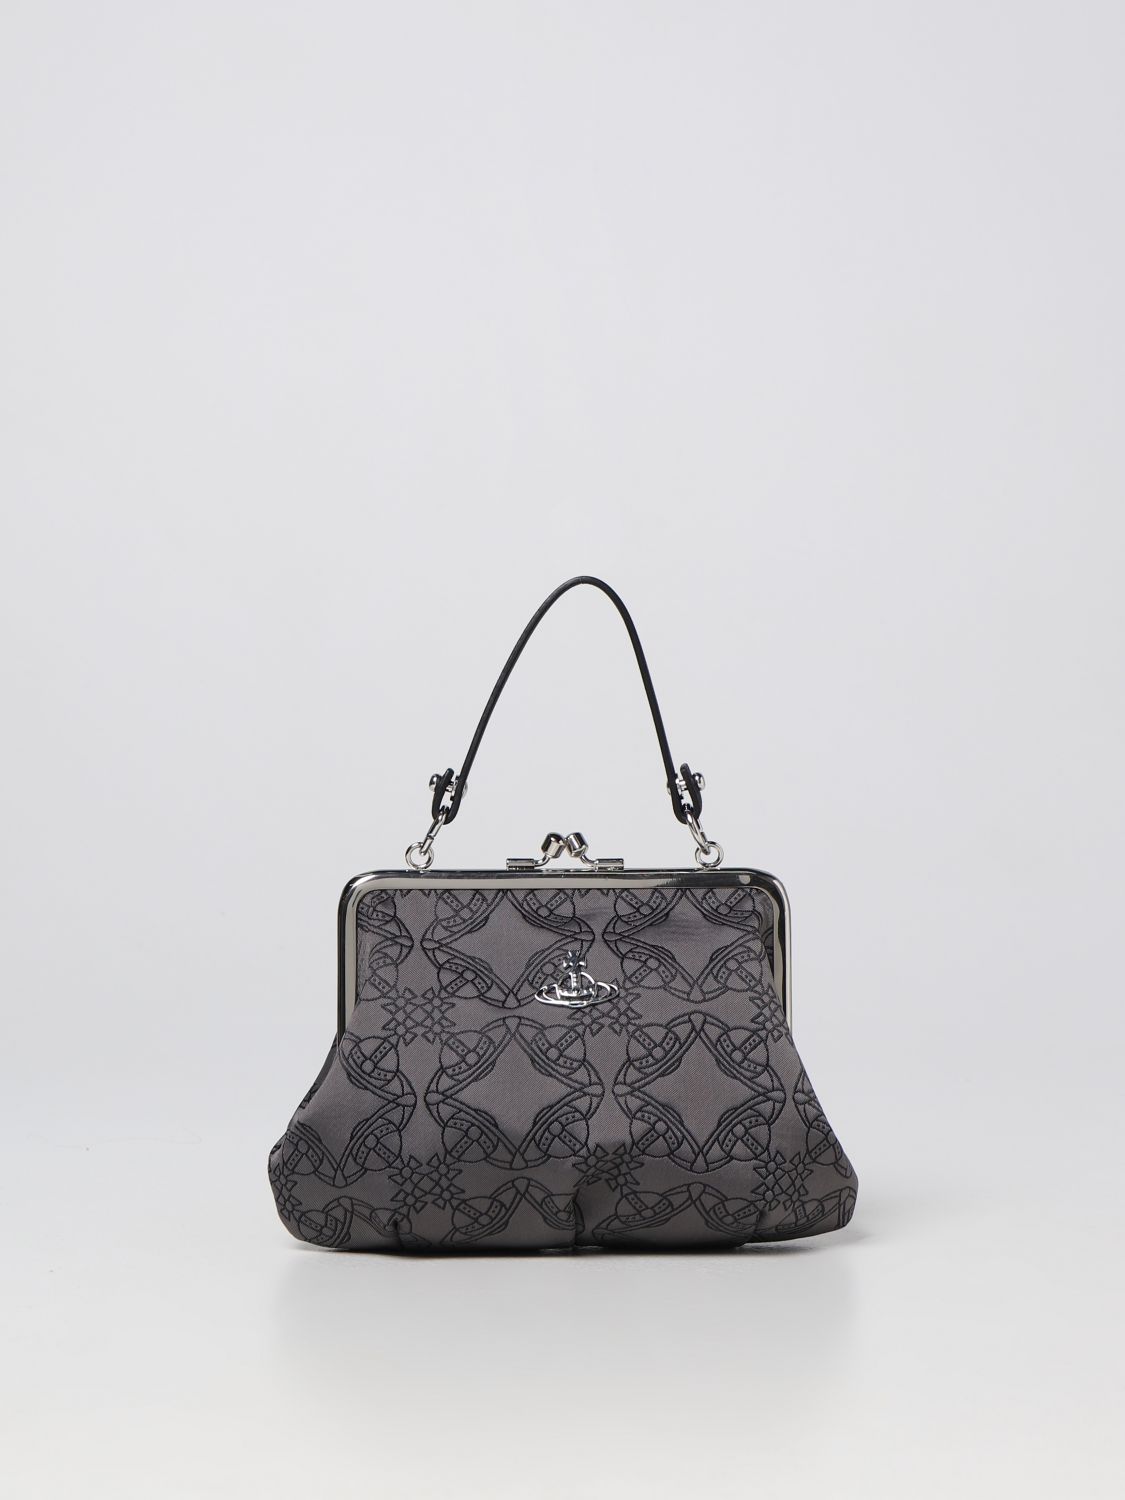 Vivienne Louis Vuitton Handbags for Women - Vestiaire Collective